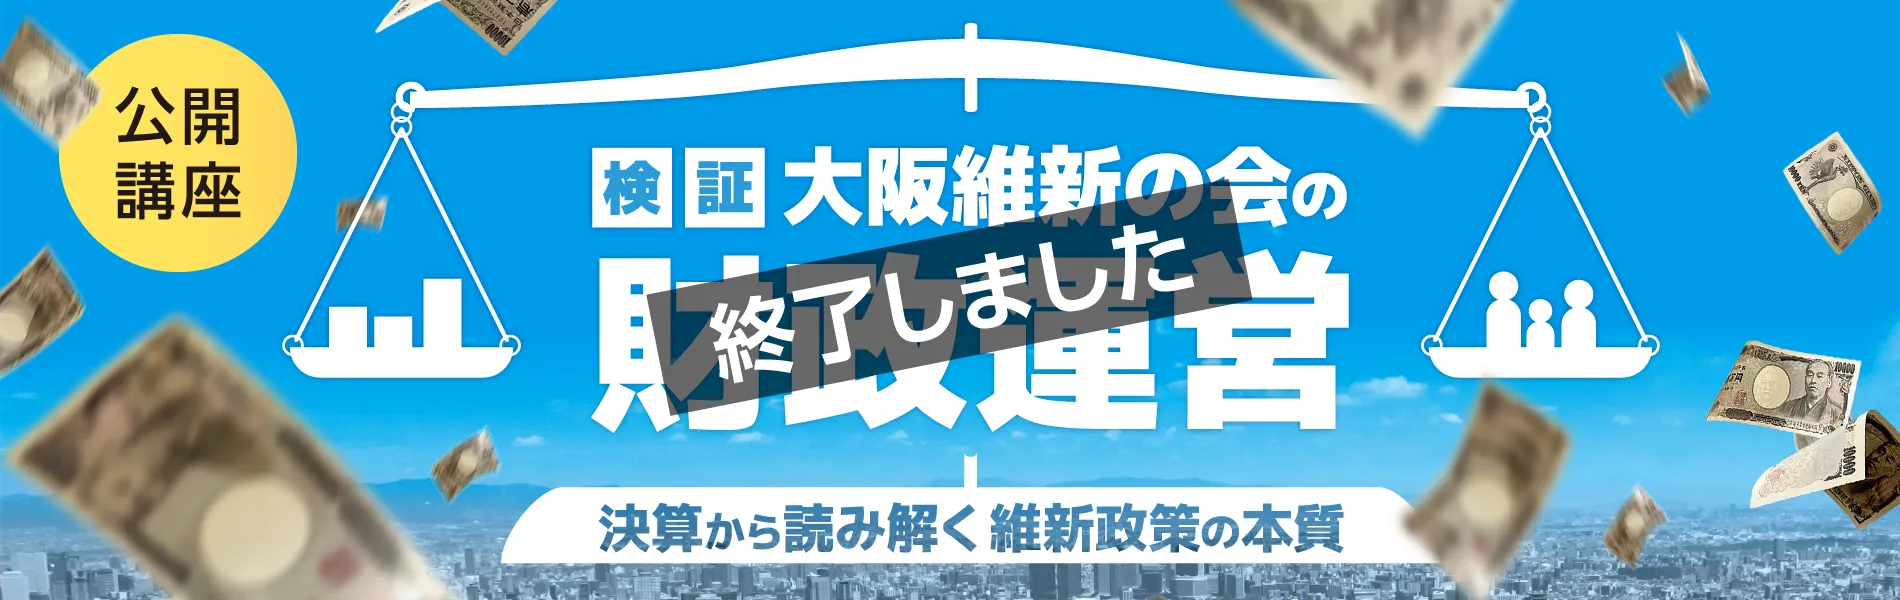 公開講座「検証・大阪維新の会の財政運営」スライドバナー